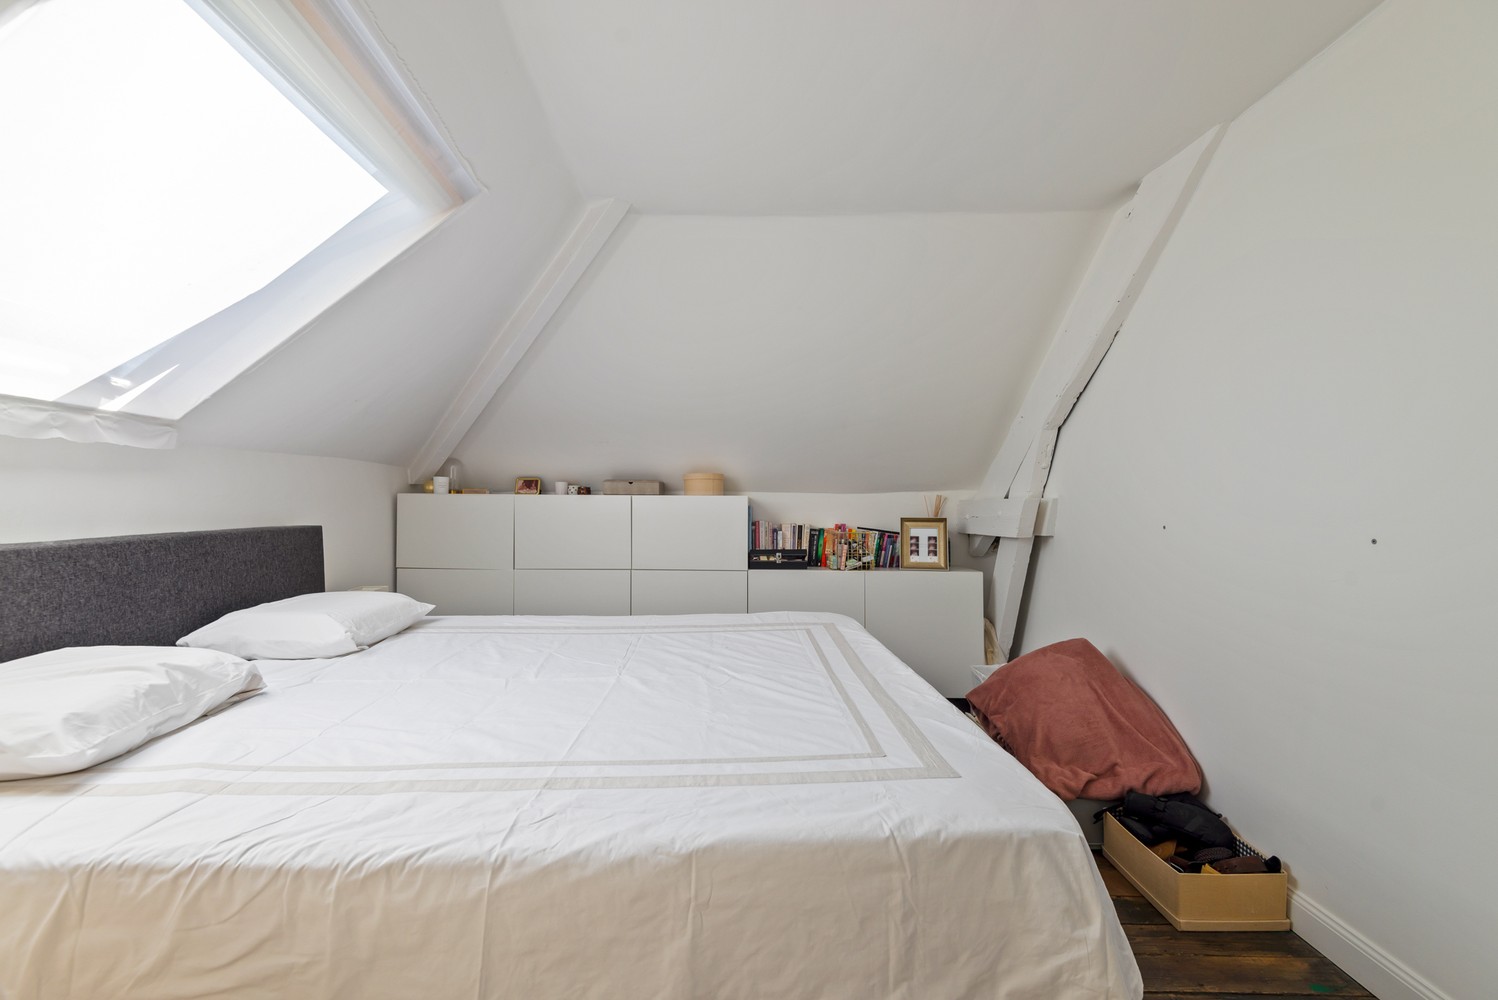 Handelshuis met drie slaapkamers te koop op toplocatie in Wijnegem! afbeelding 22